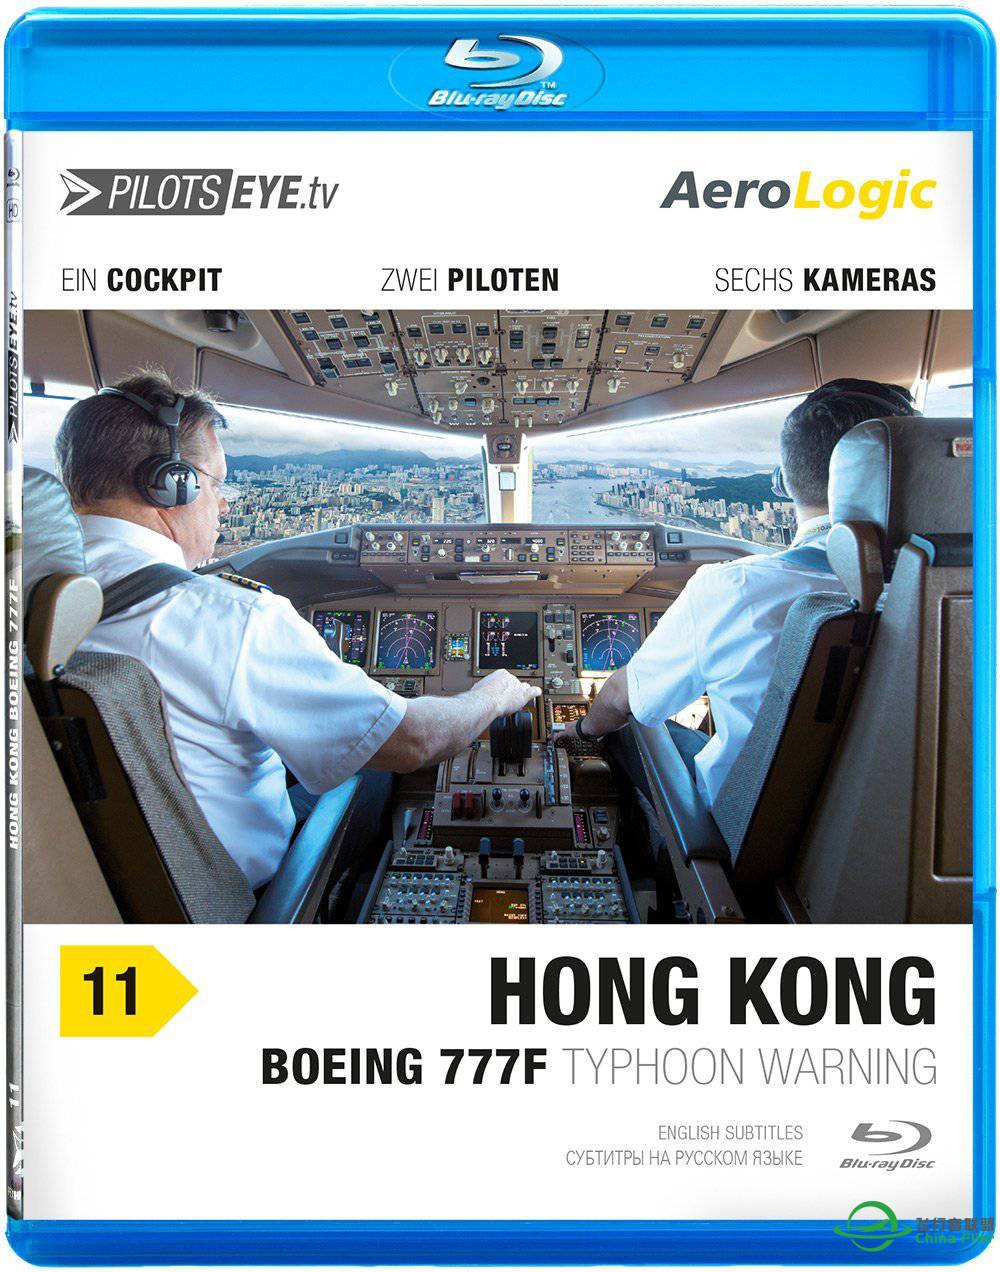 PilotsEye（飞行员之眼）系列视频 ---- 莱比锡-香港-3855 